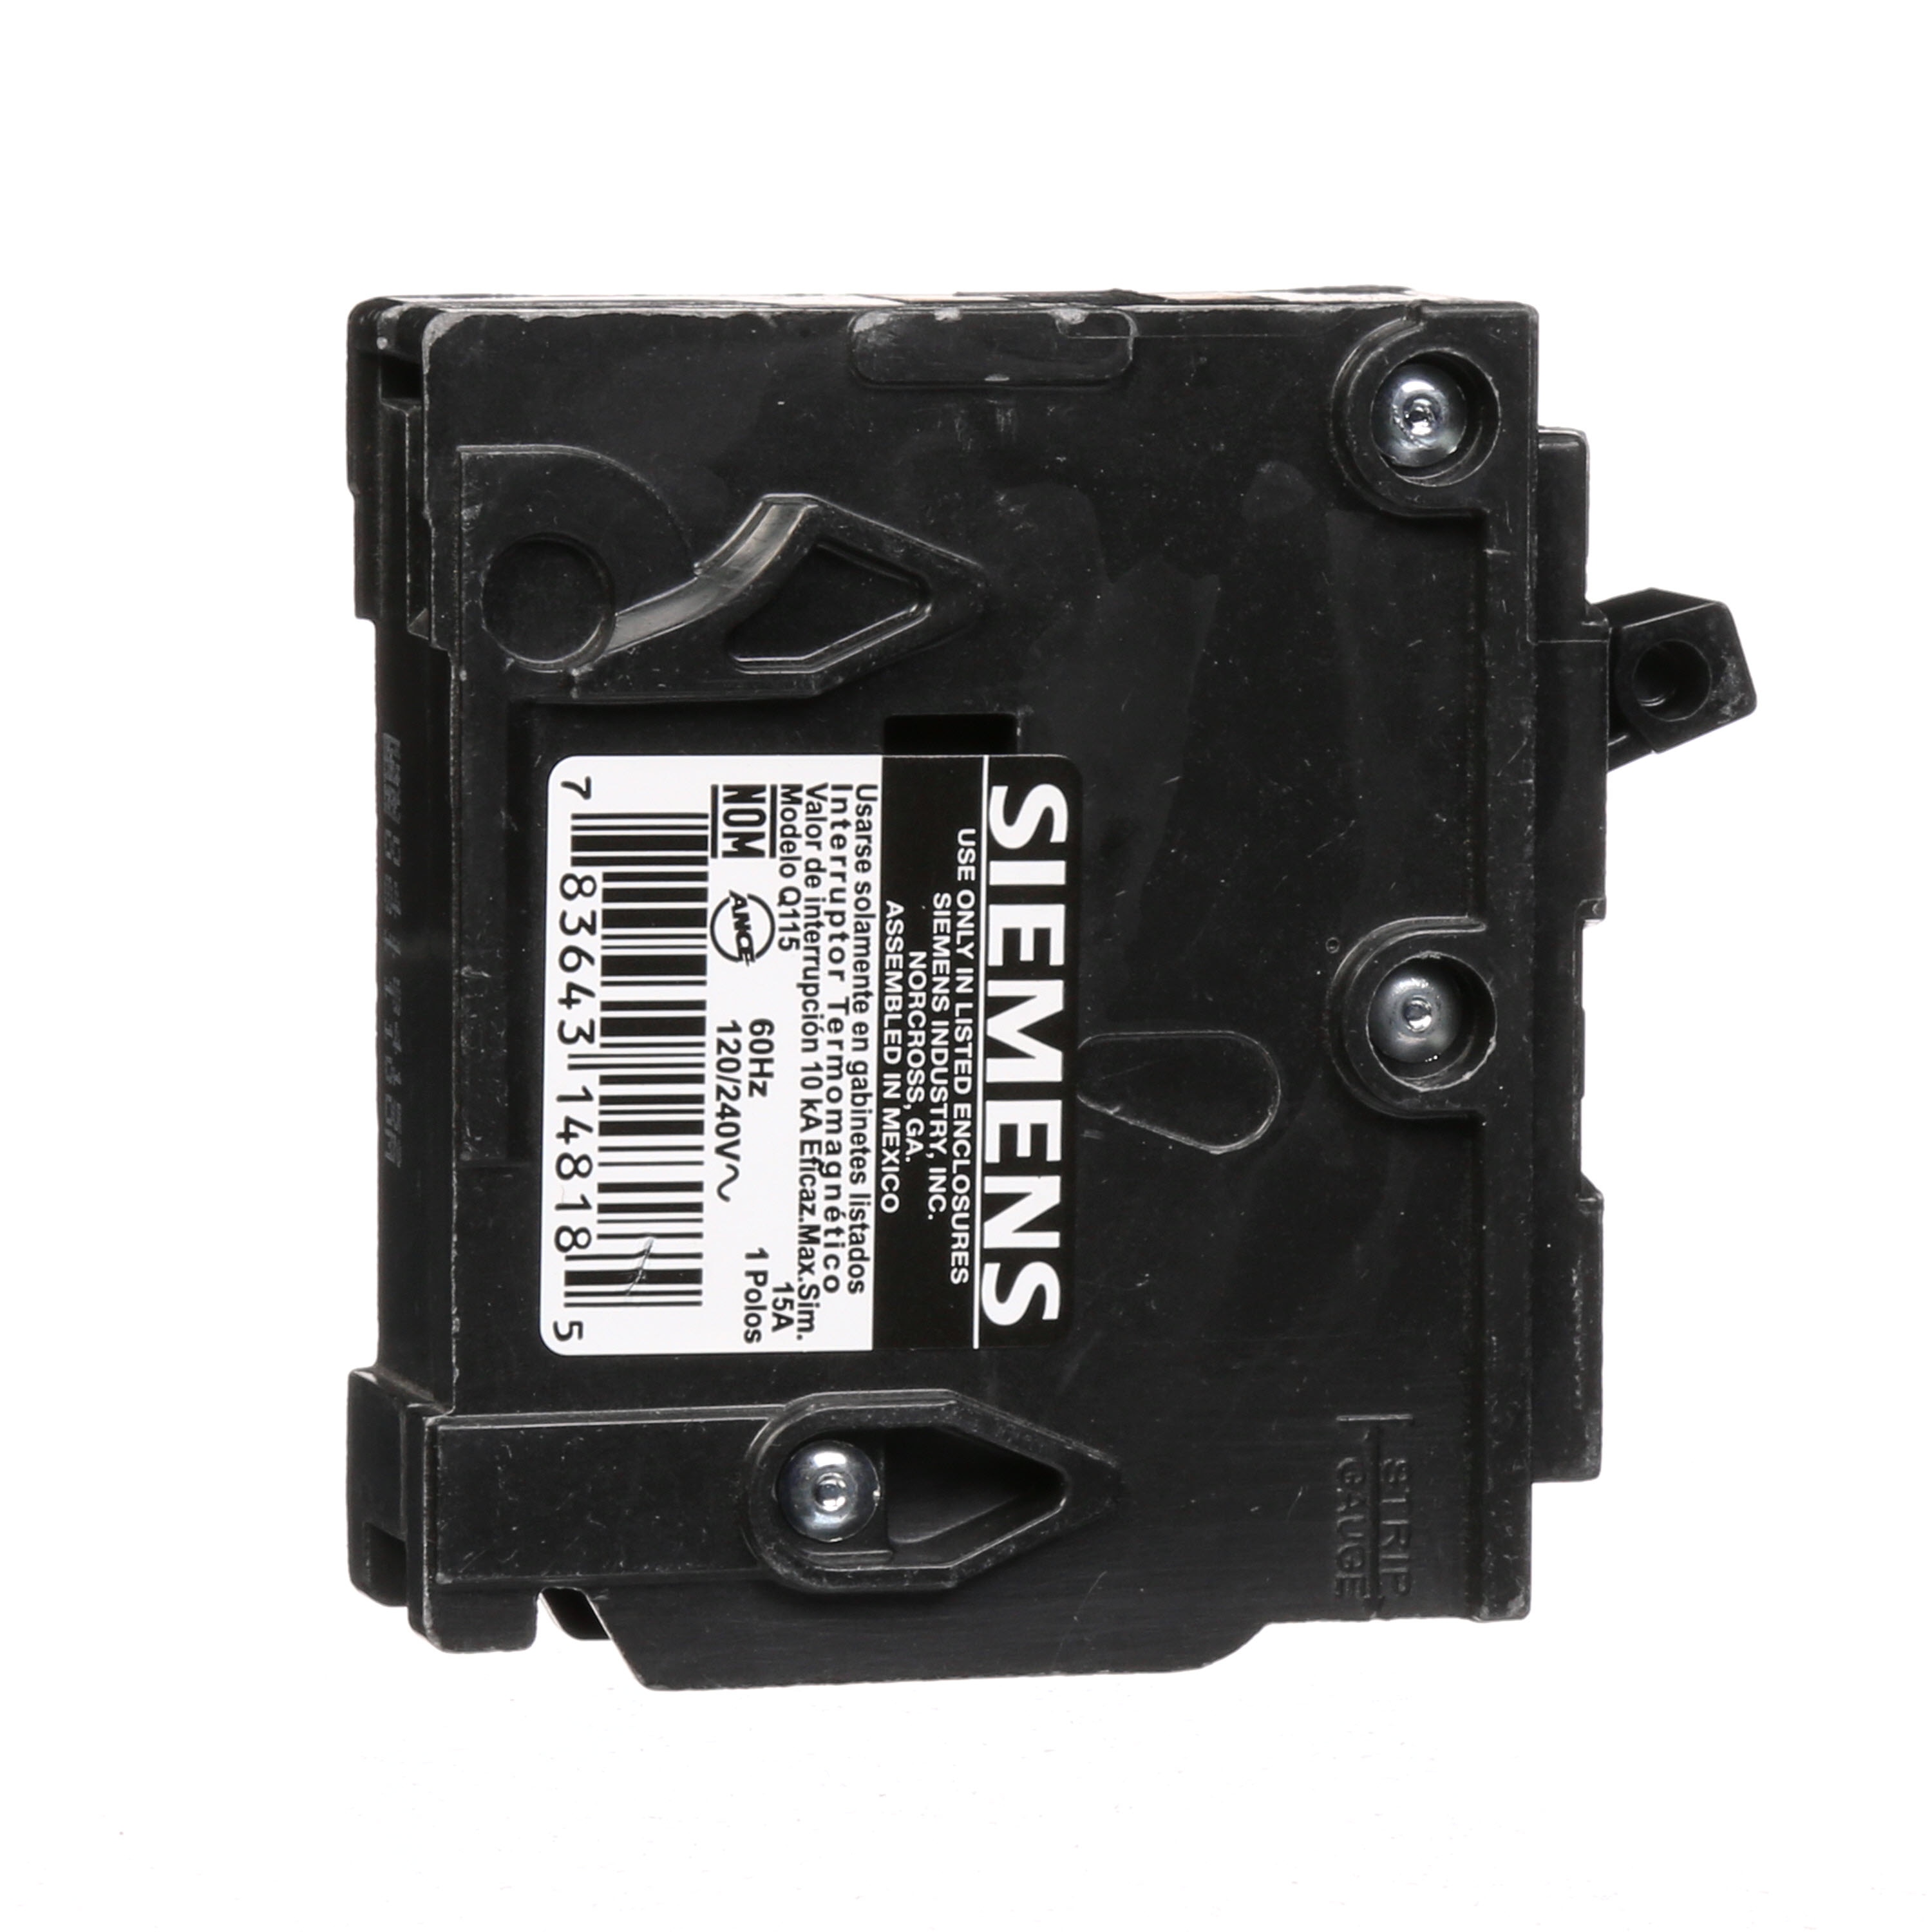 Siemens QP Q115 1 Pole 15 Amp Circuit Breaker for sale online 